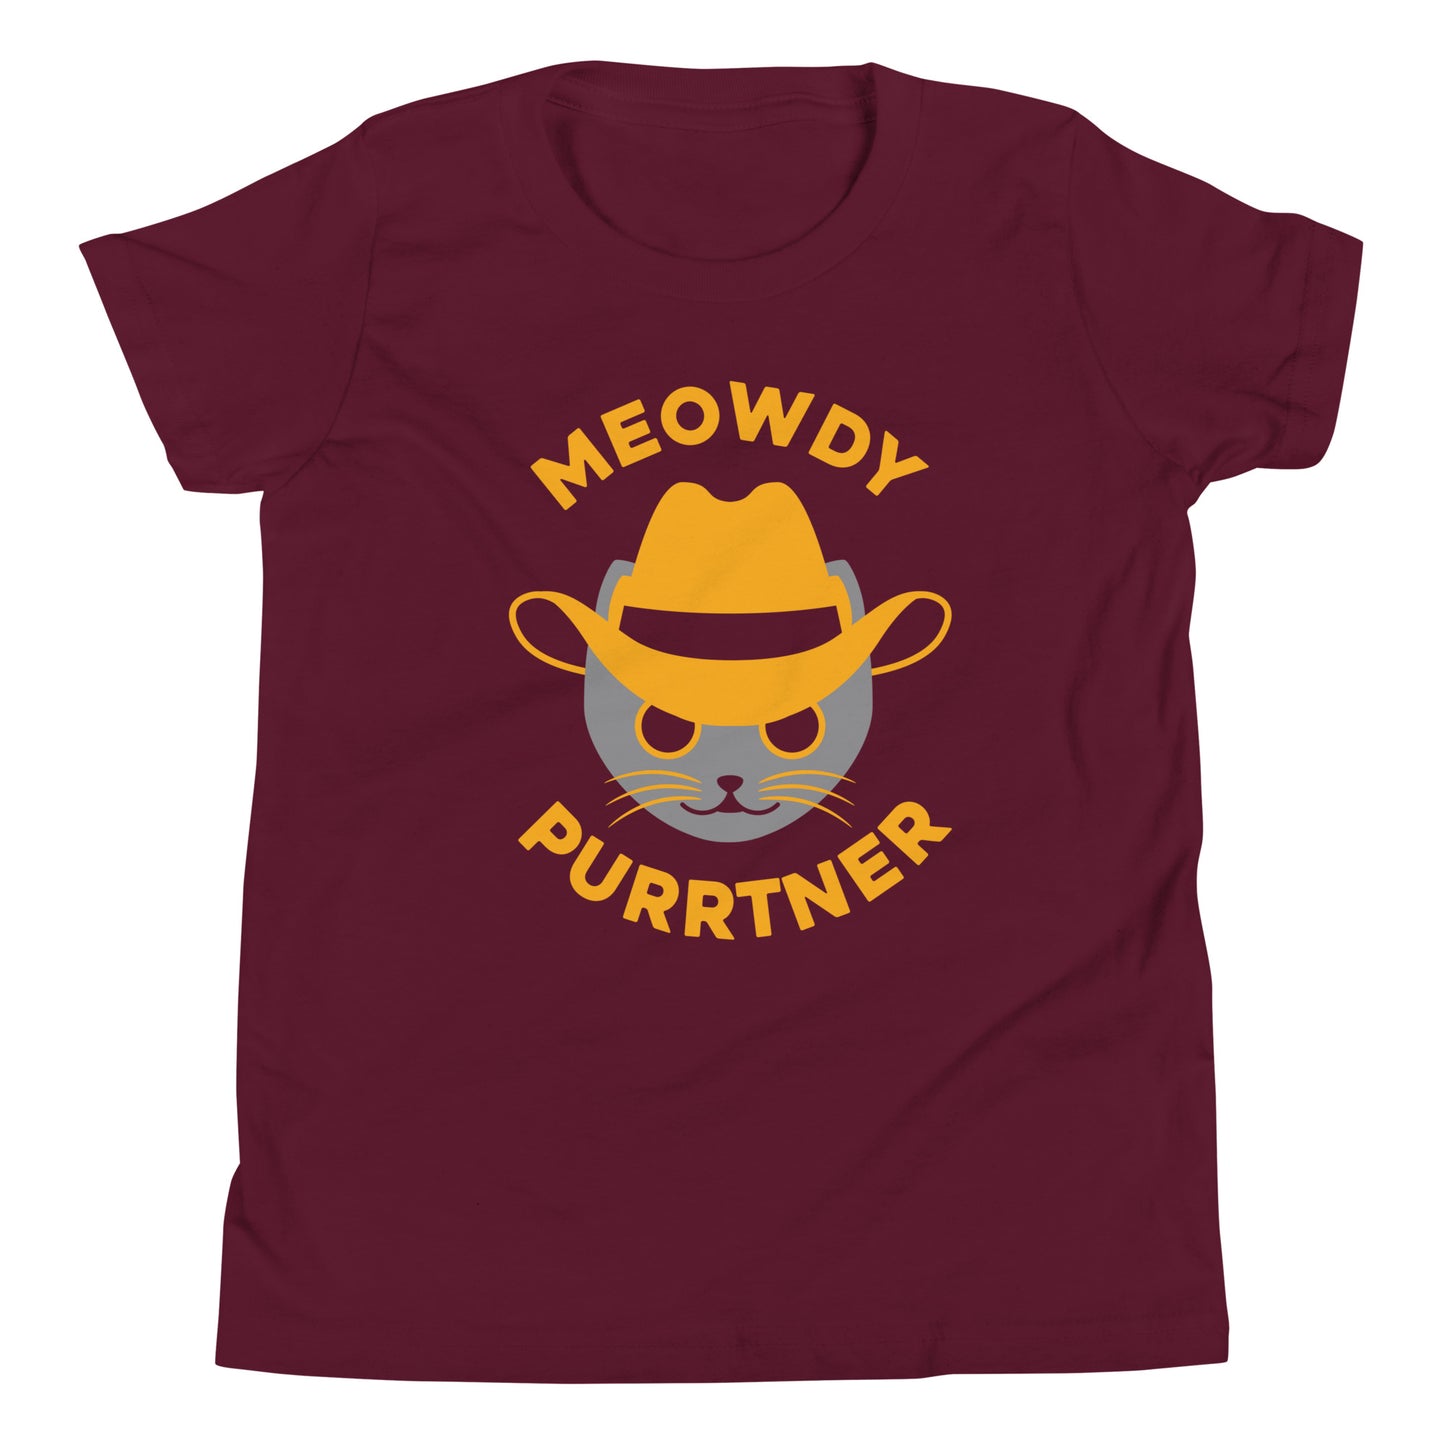 Meowdy Purrtner Kid's Youth Tee